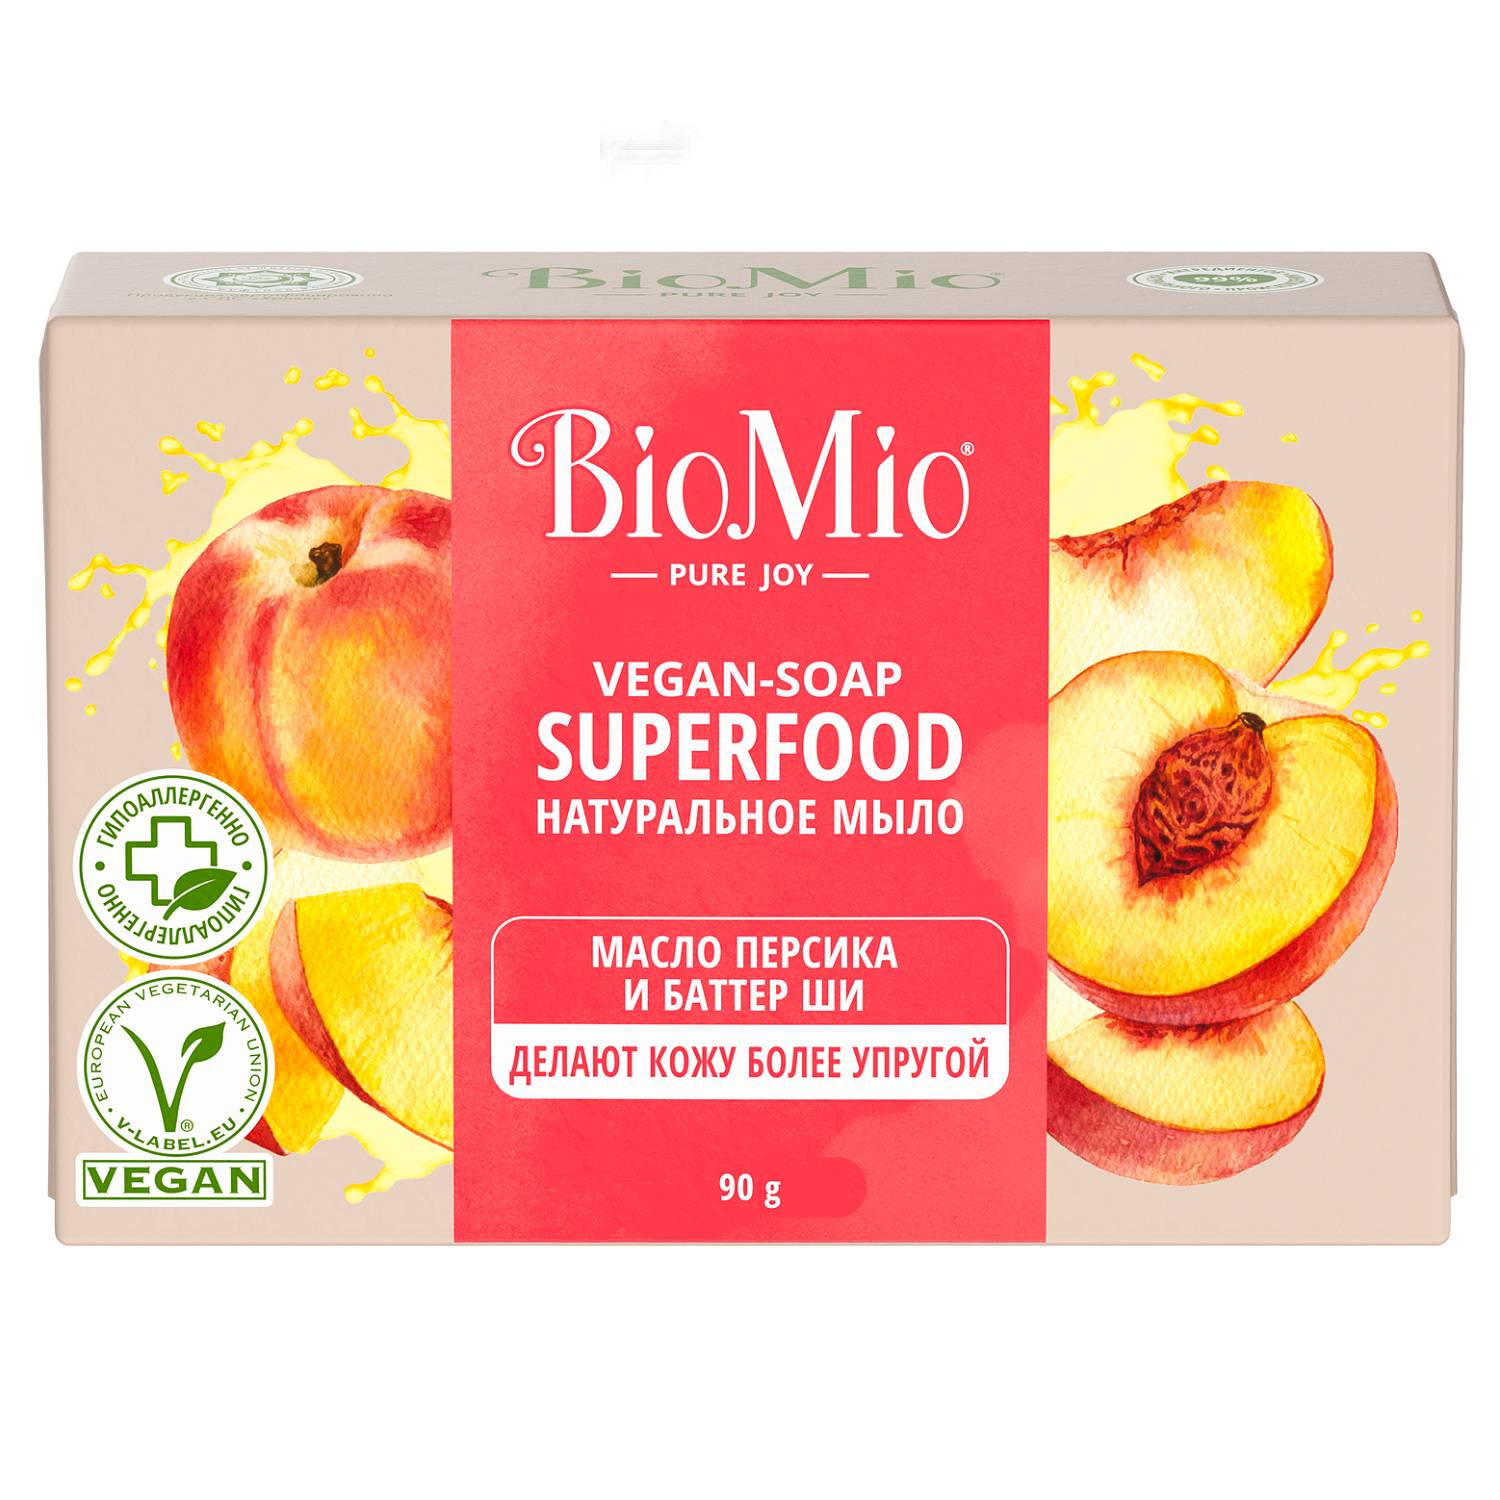 BioMio Натуральное мыло Персик и ши Vegan Soap Superfood, 90 г (BioMio, Мыло) biomio bio soap натуральное мыло персик и ши 3шт по 90 г